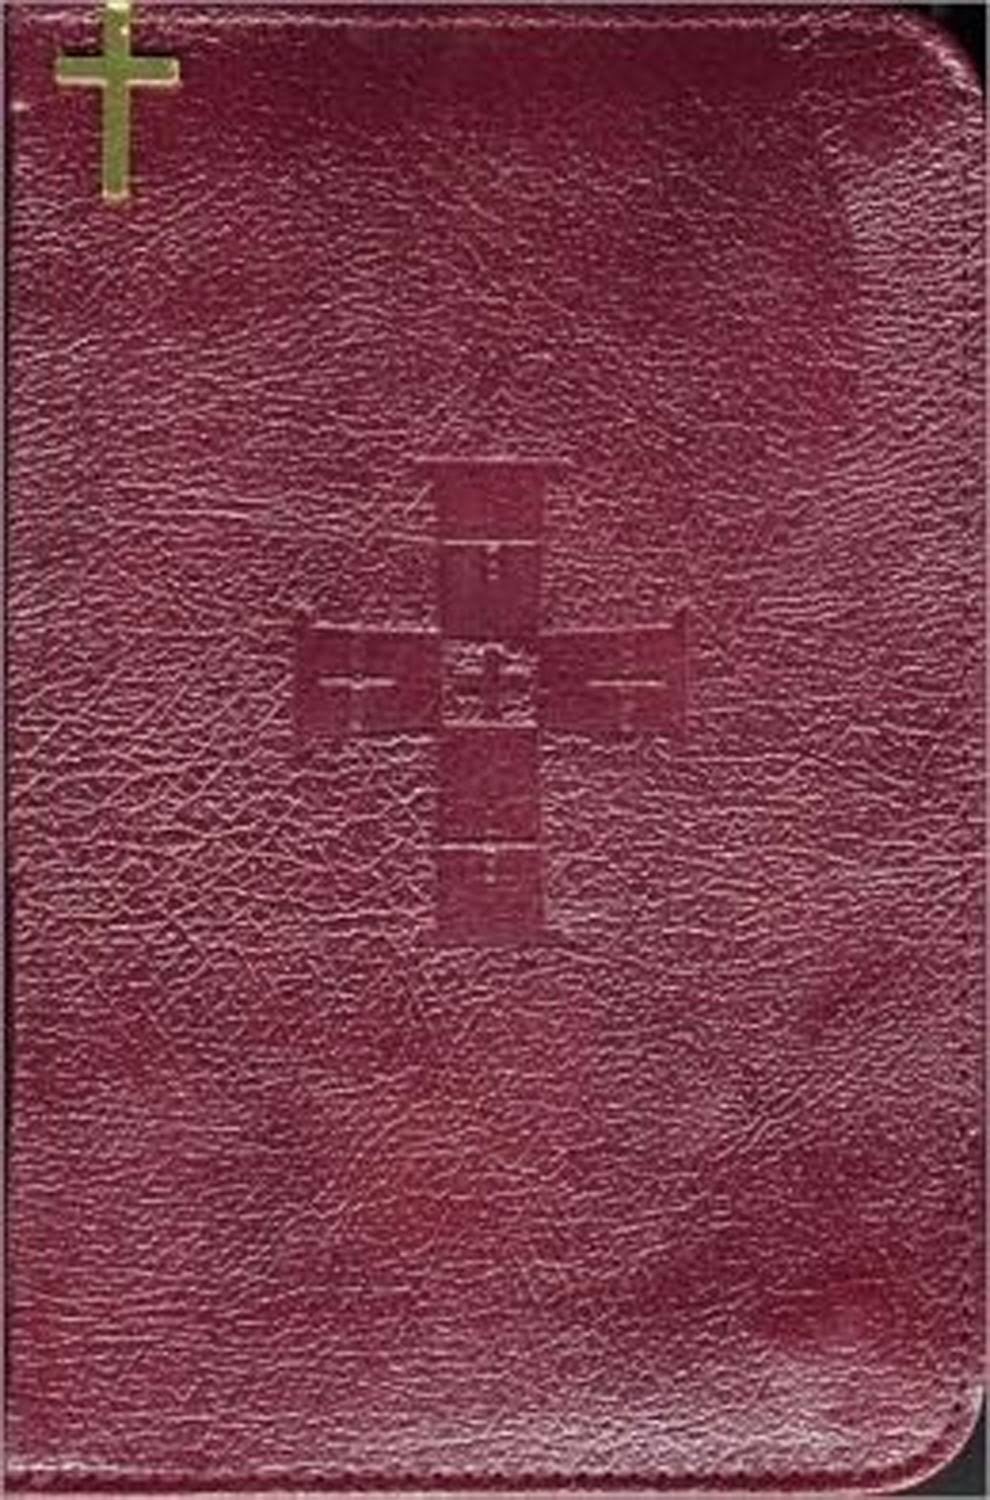 New Saint Joseph Sunday Missal - Catholic Book Publishing Co